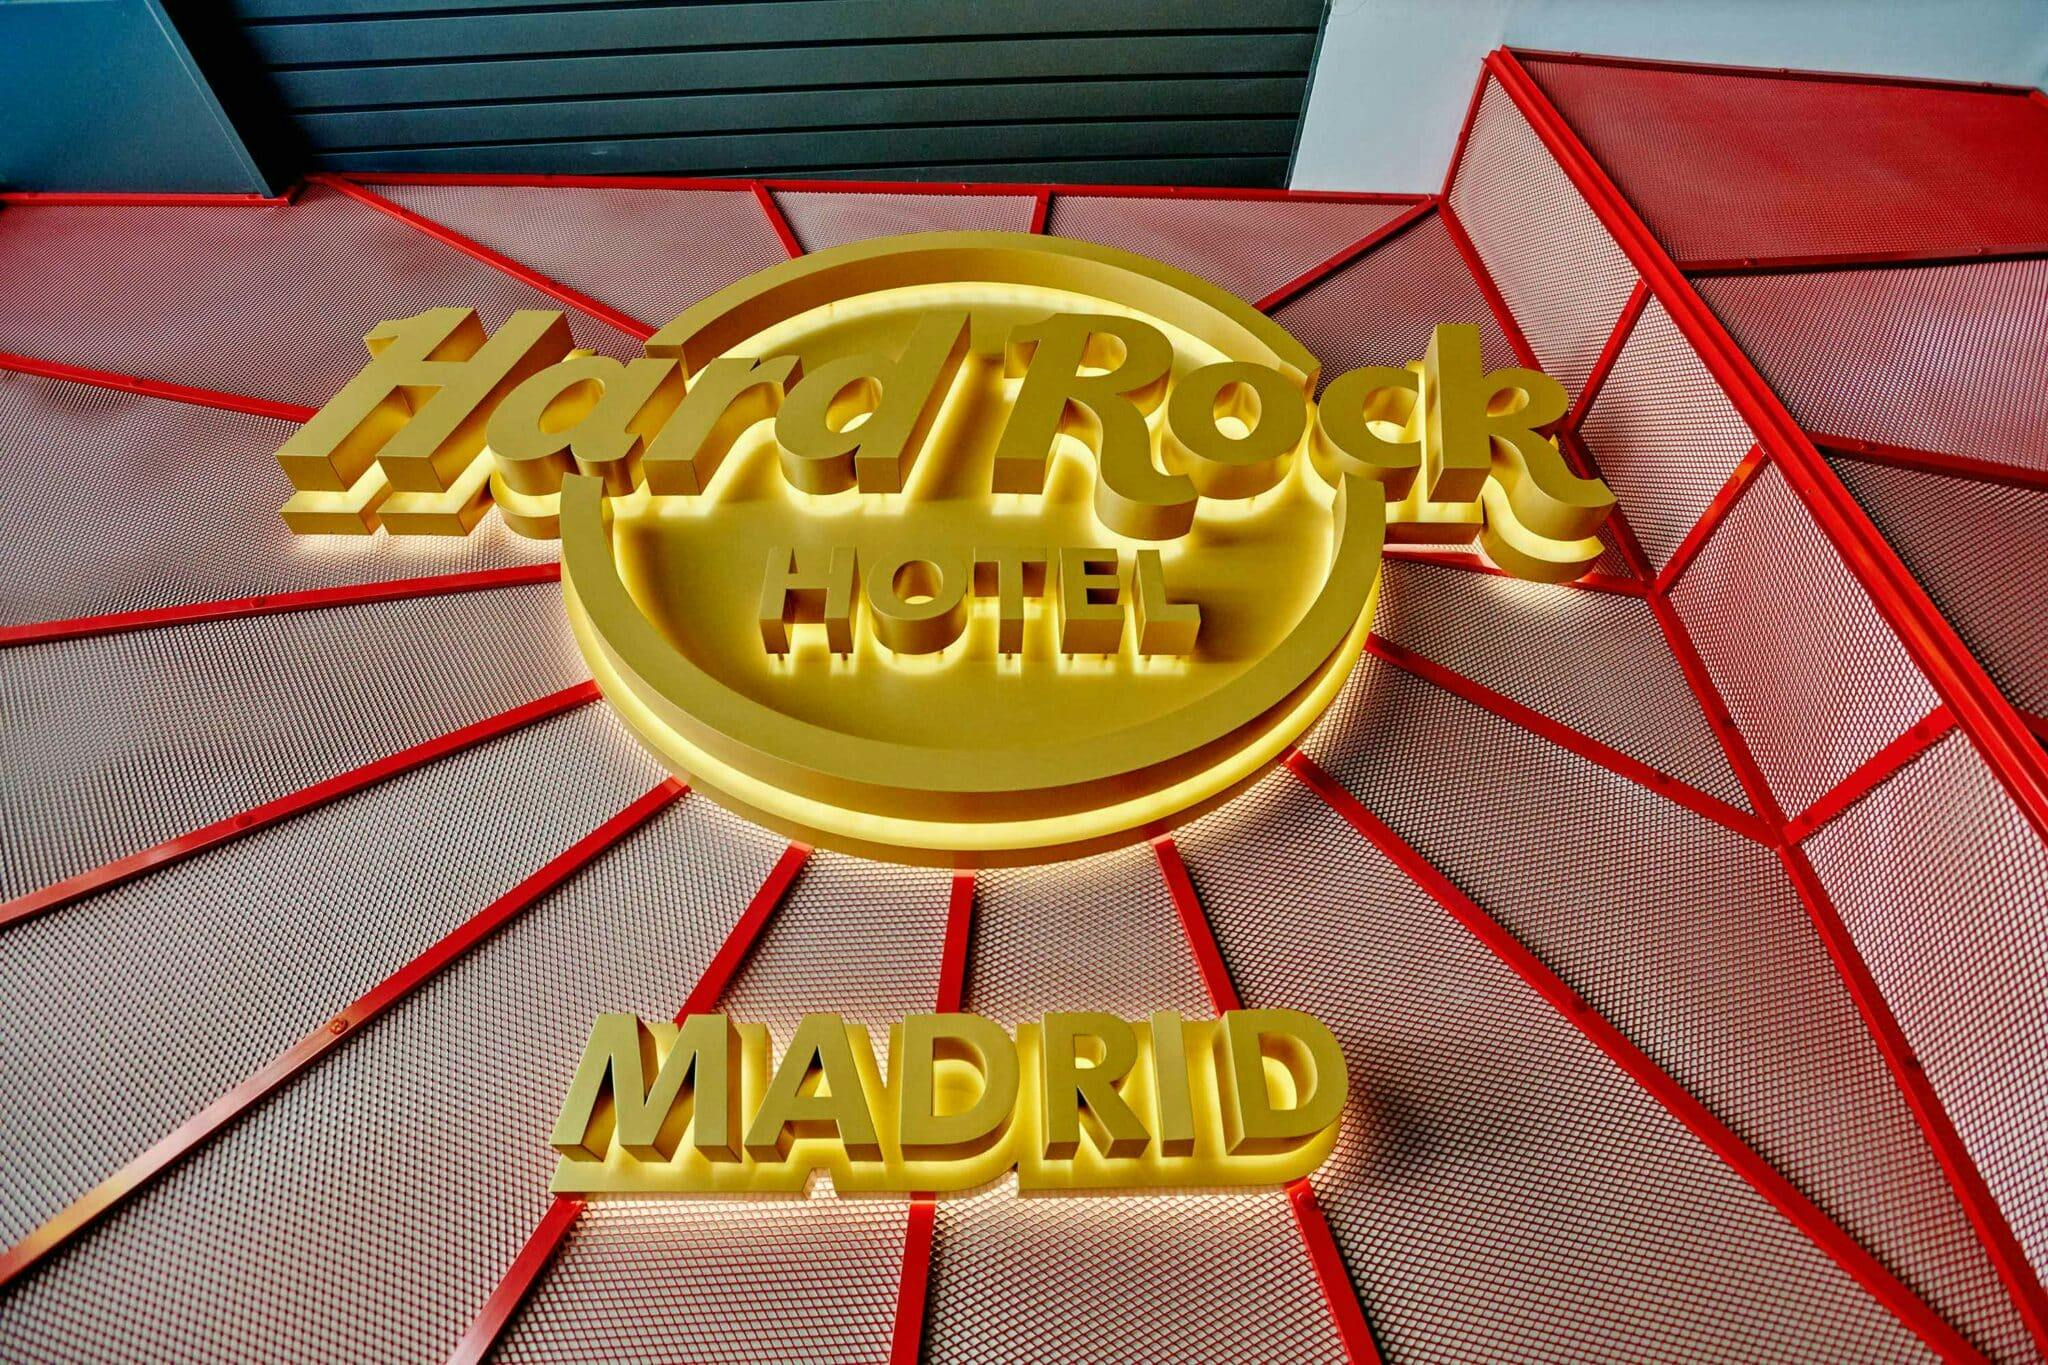 Imagen número 22 de la sección actual de Hard Rock Hotel Madrid